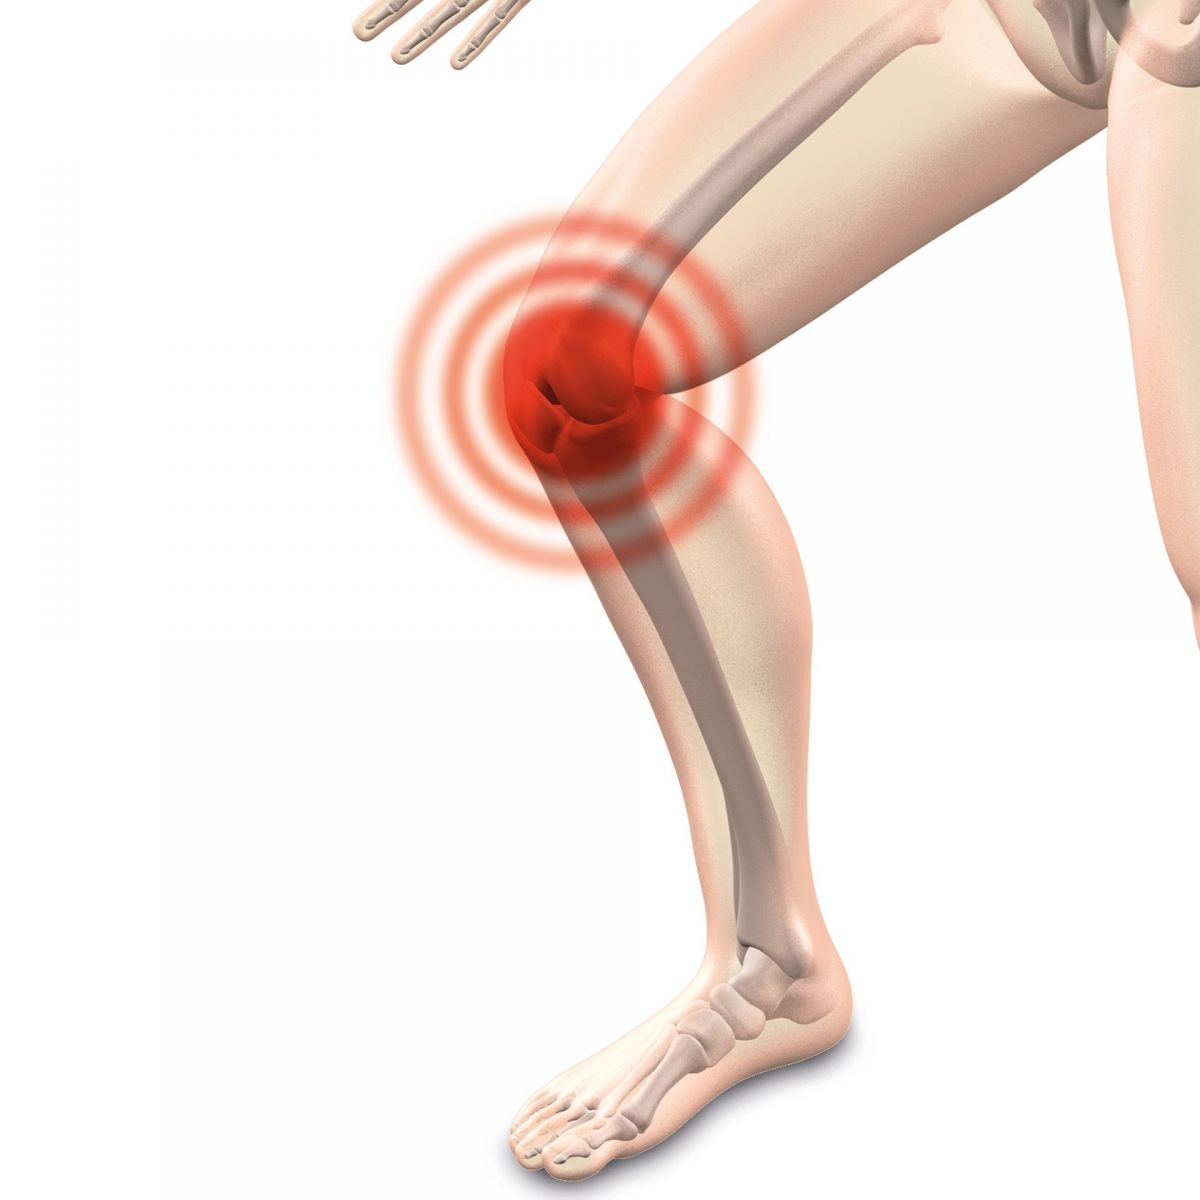 退化性關節炎改善撇步:飲食、護膝、復健 | 文章內置圖片